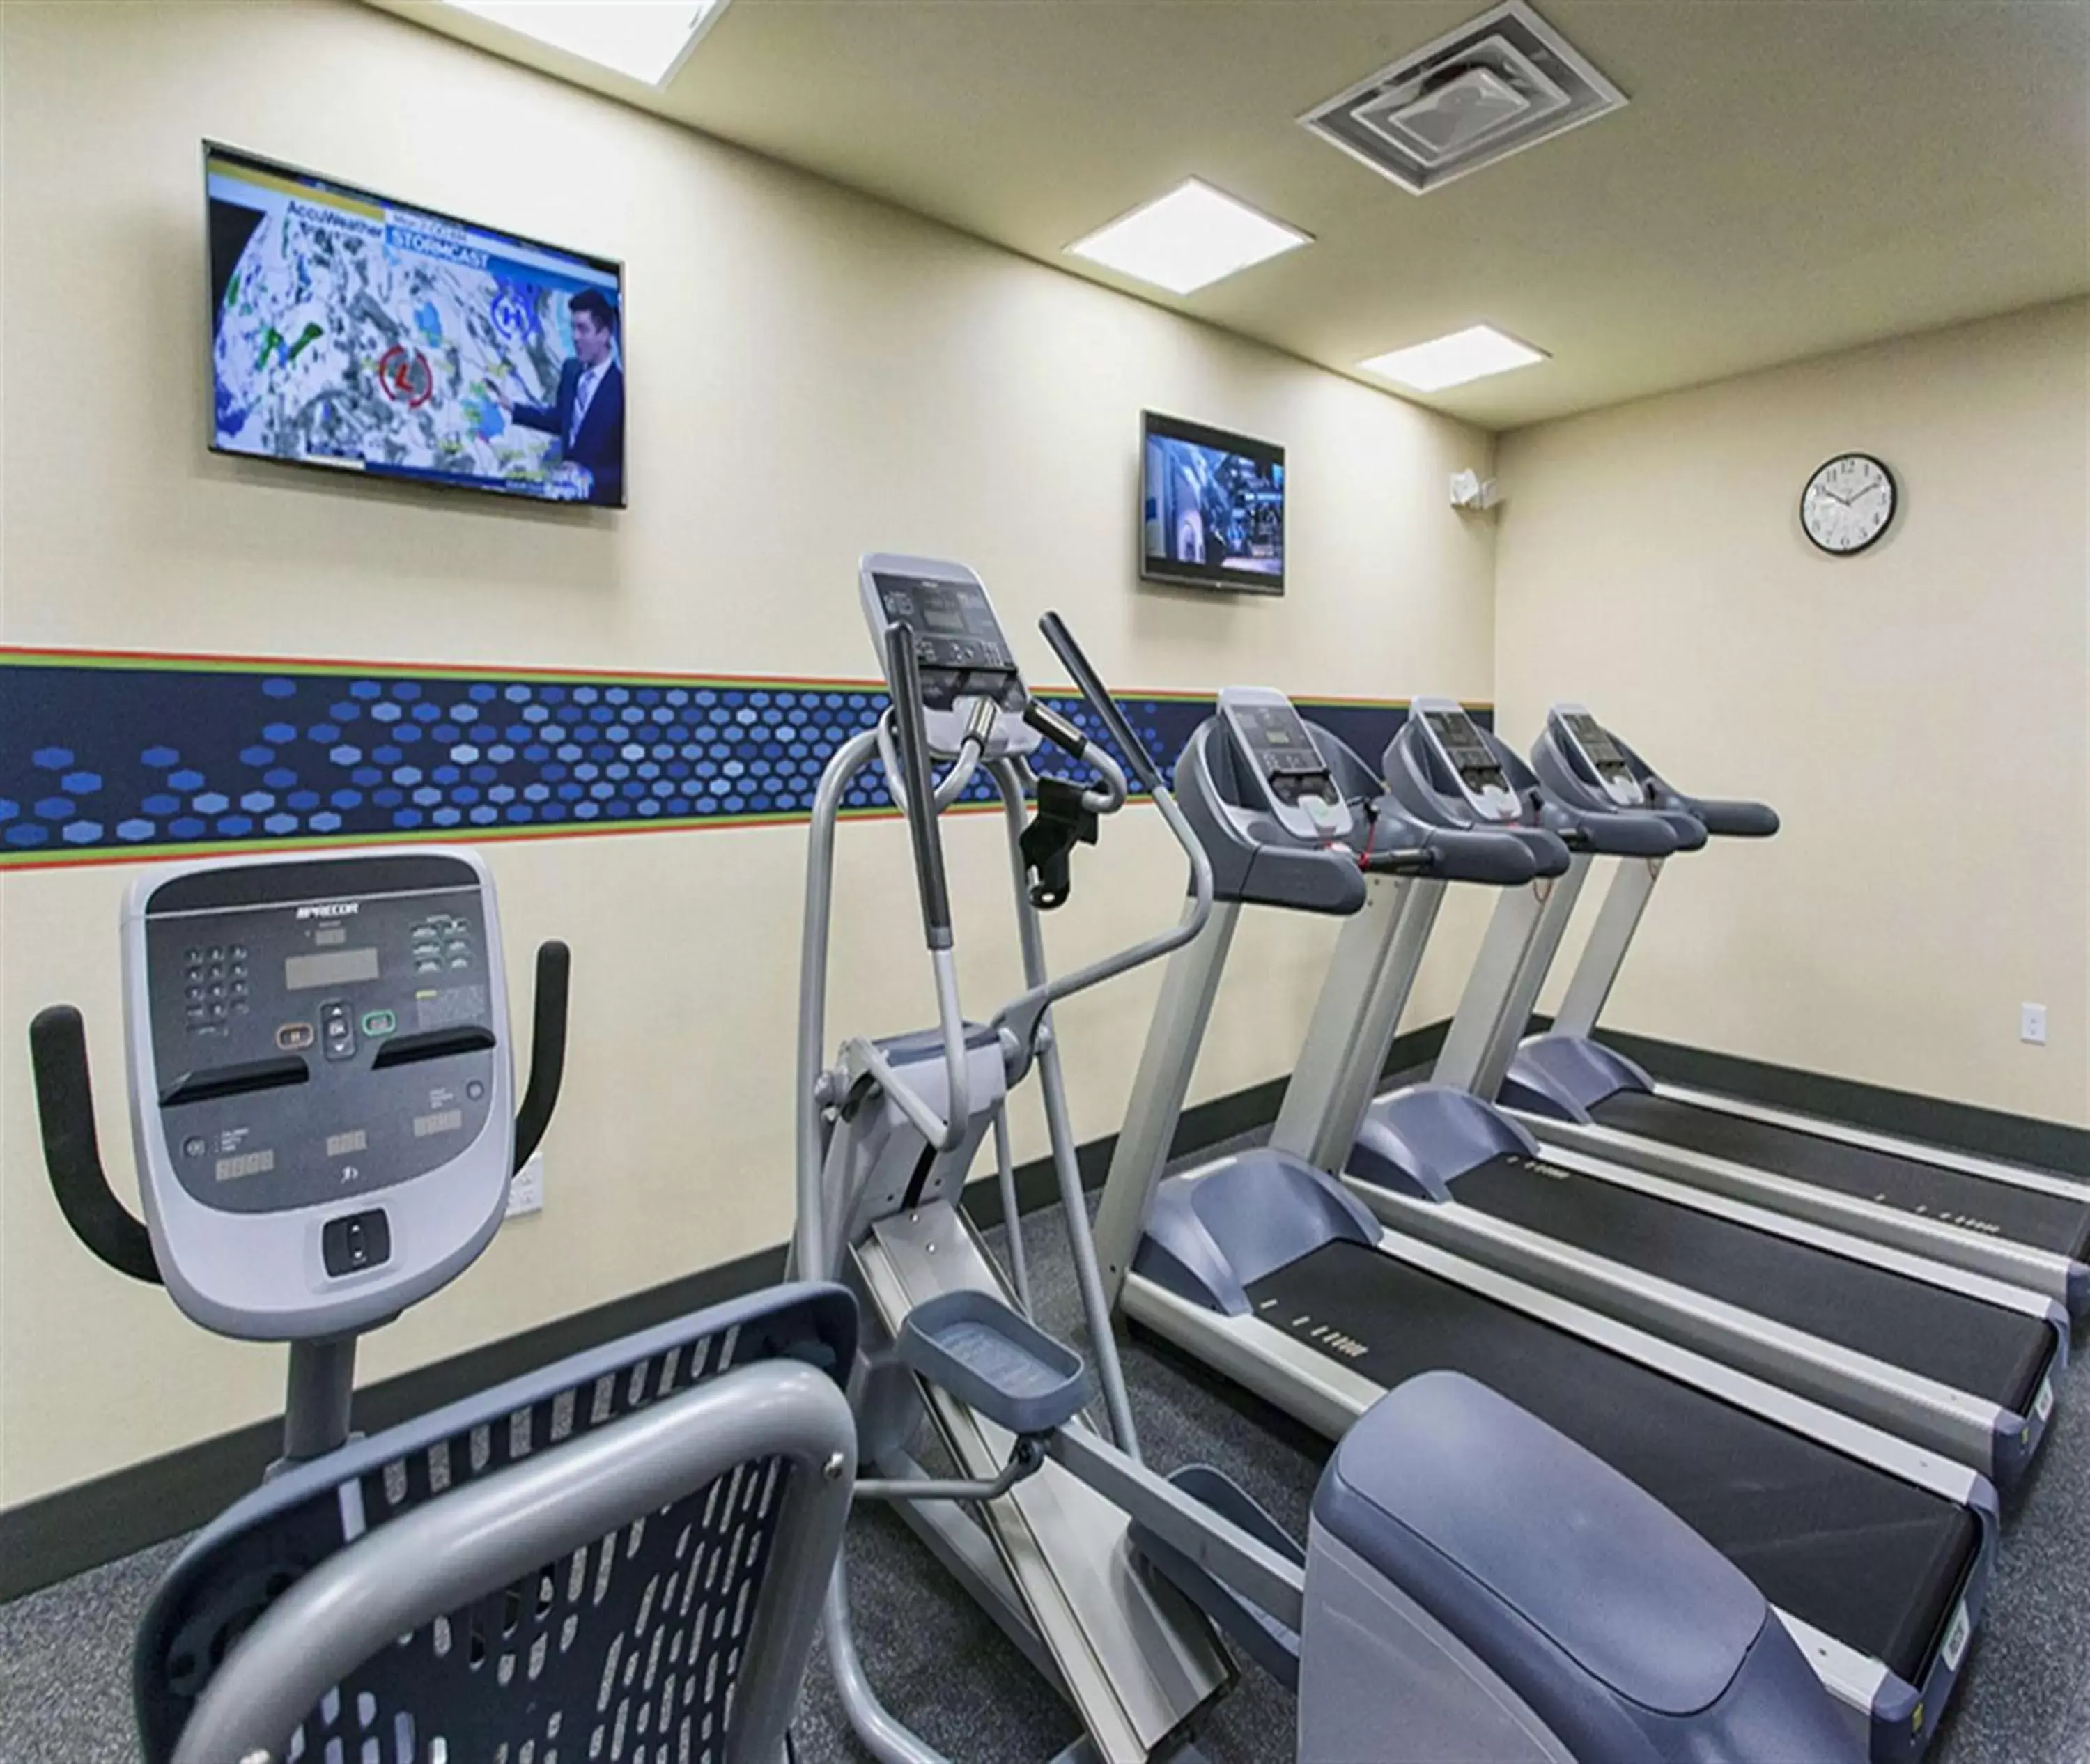 Fitness centre/facilities, Fitness Center/Facilities in Hampton Inn Hibbing